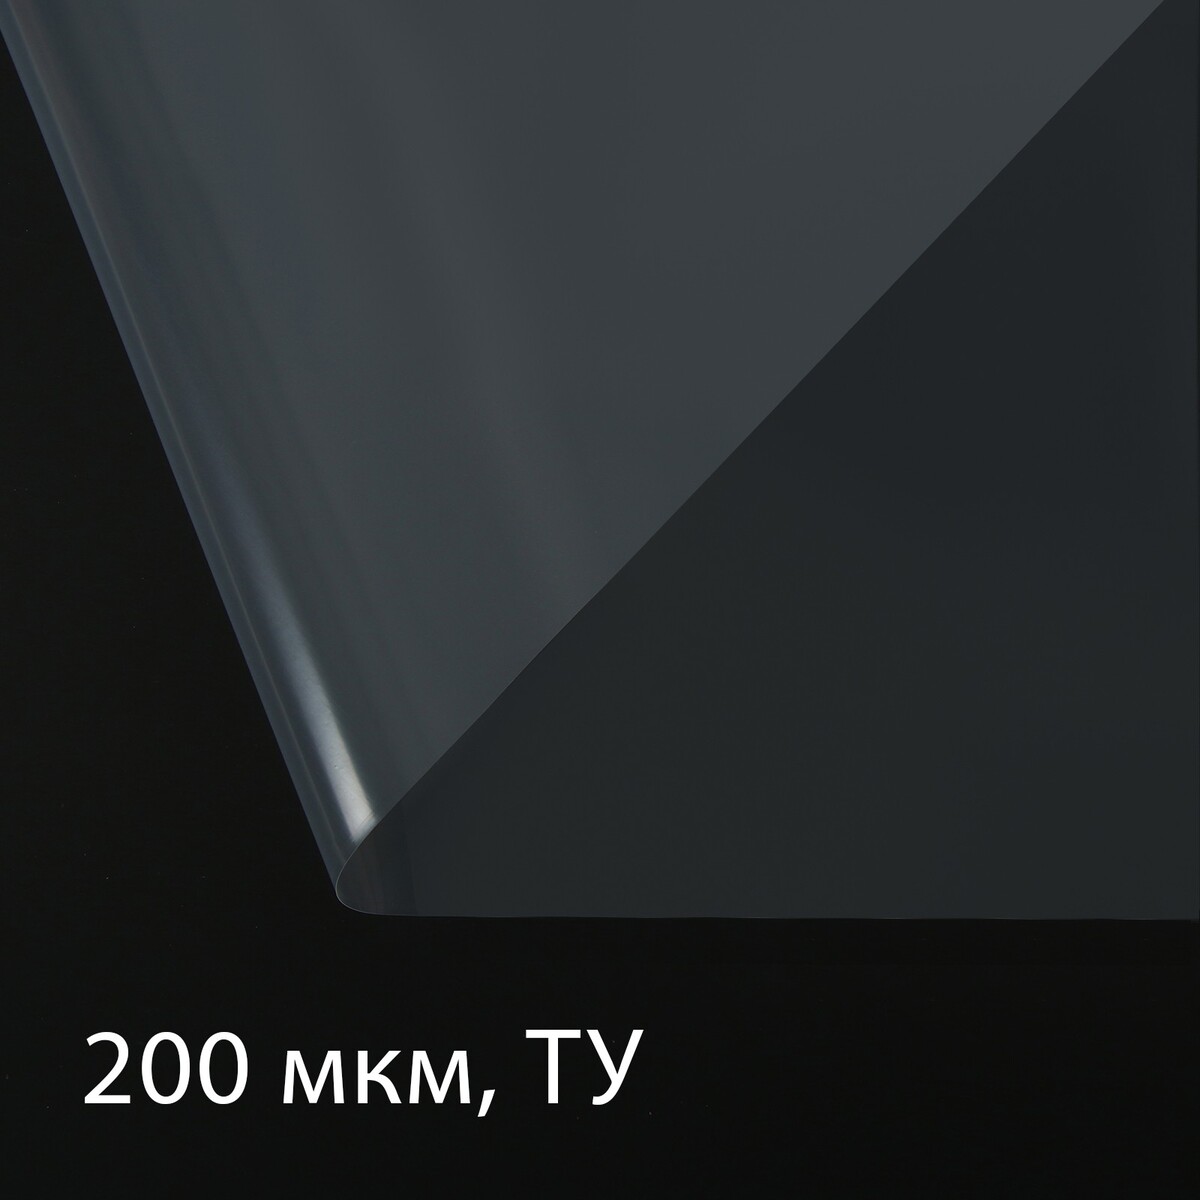 фото Пленка полиэтиленовая, толщина 200 мкм, прозрачная, 5 × 3 м, рукав (1.5 × 2 м), эконом 50% greengo